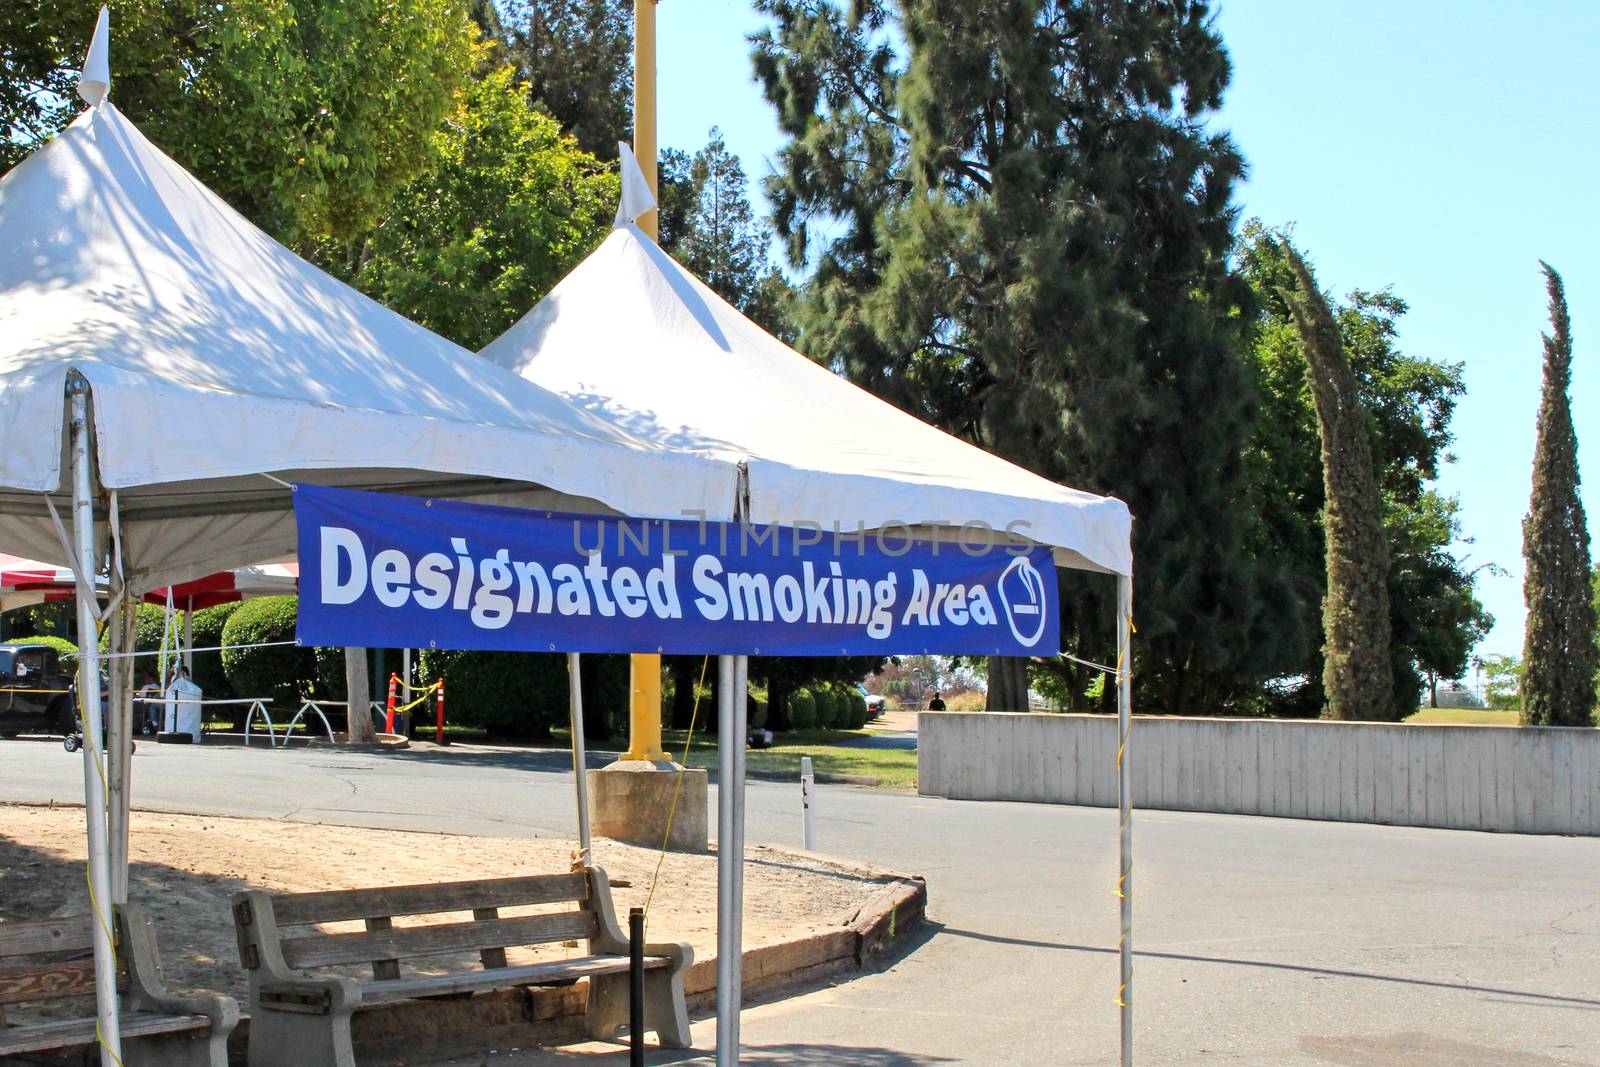 Designated smoking area